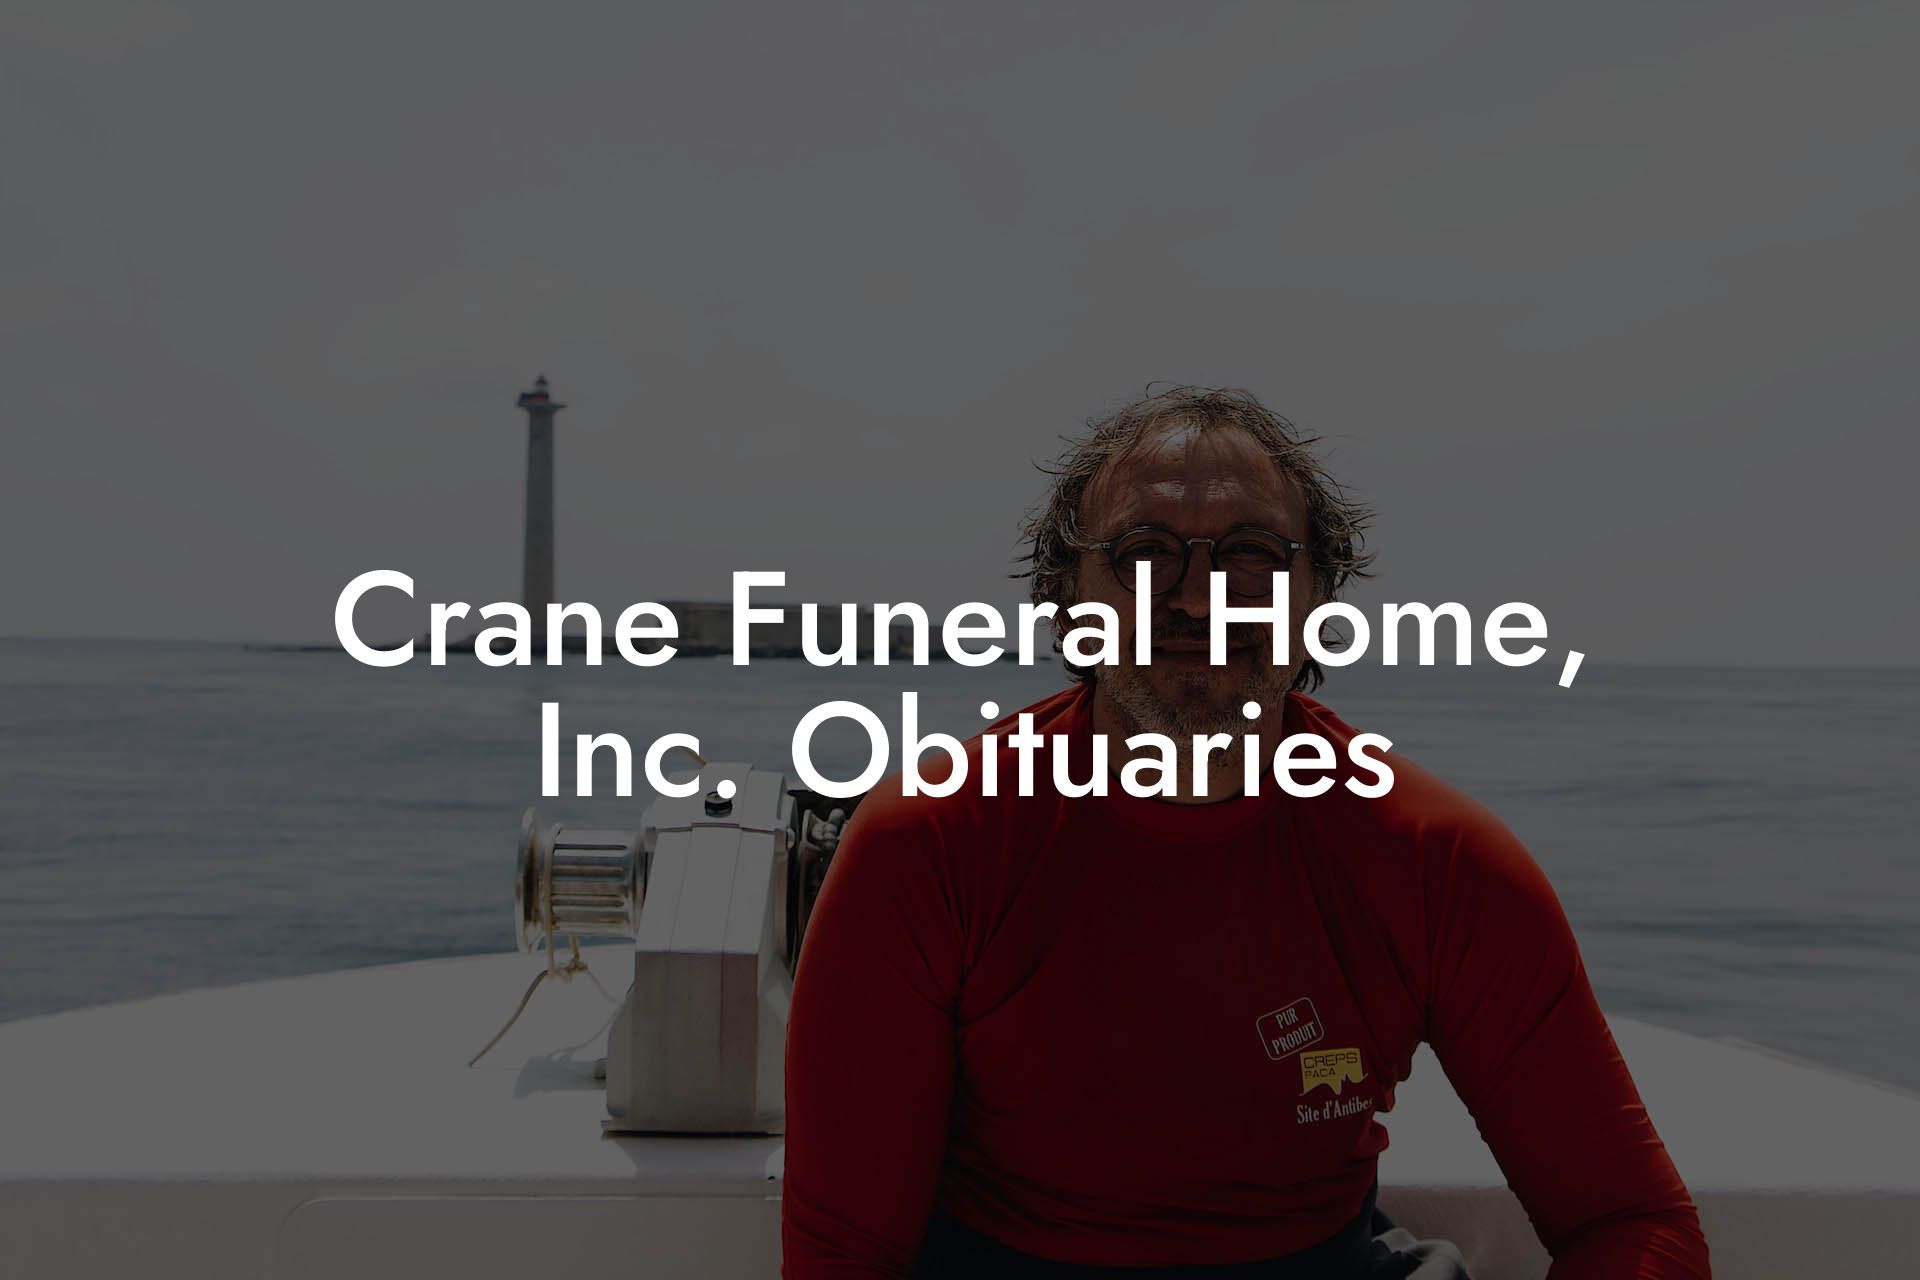 Crane Funeral Home, Inc. Obituaries